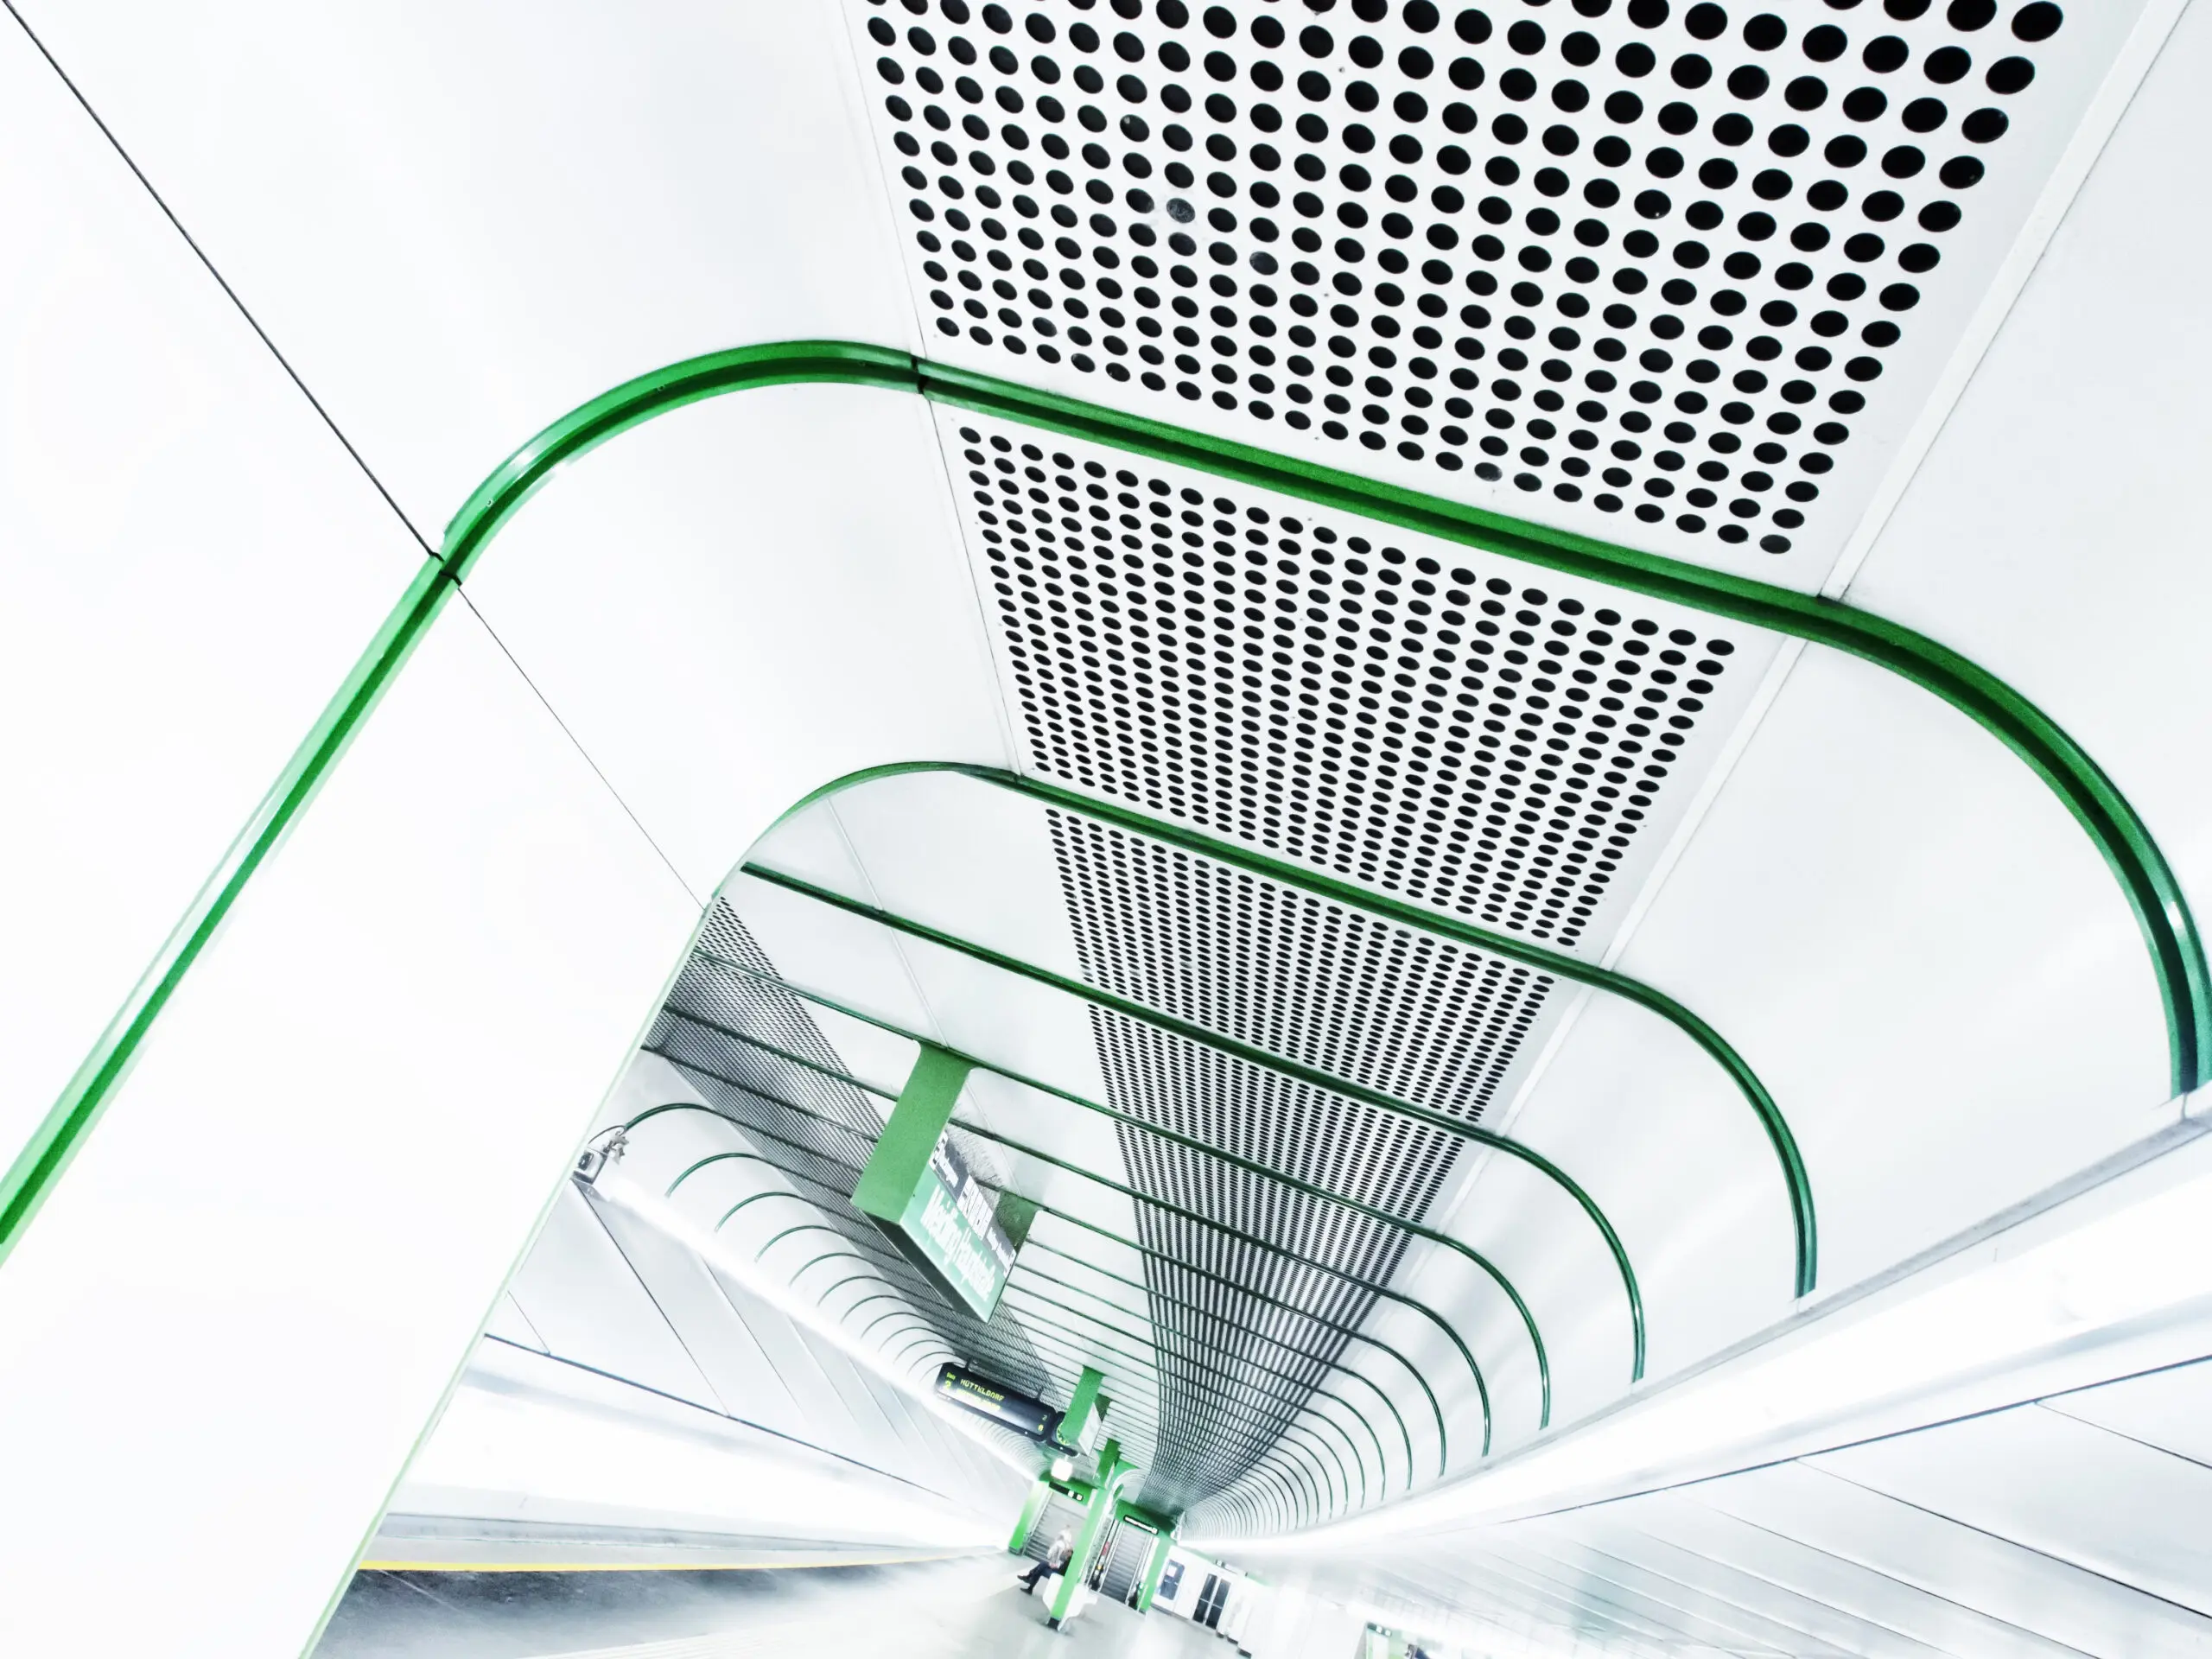 Wandbild (2929) Green Line präsentiert: Architektur,Detailaufnahmen